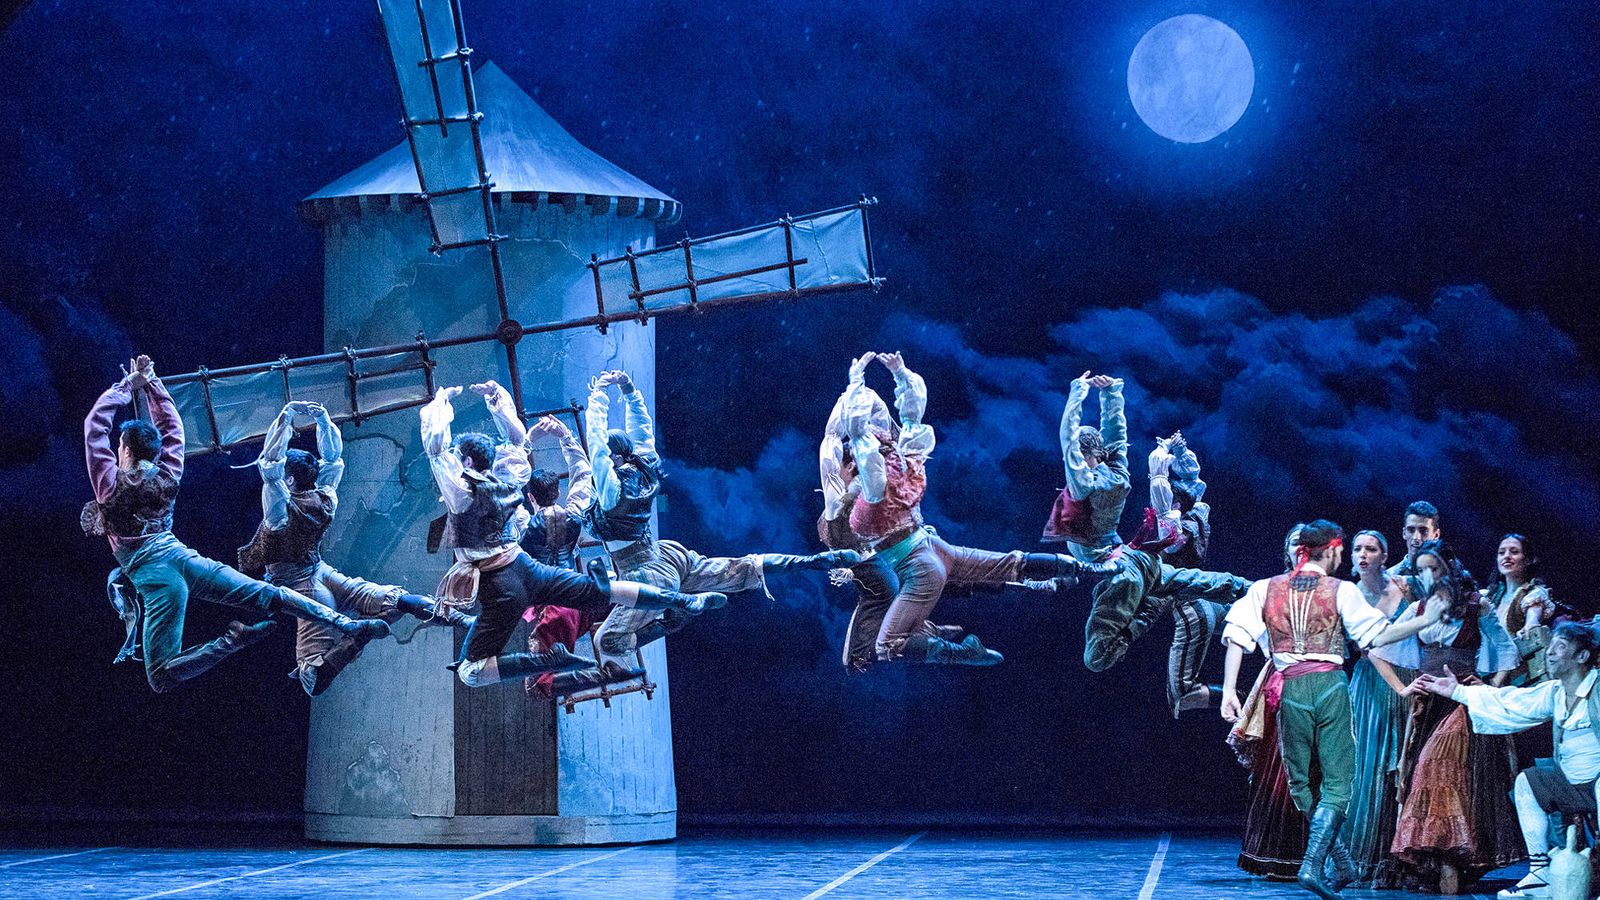 Arte: Don Quijote, el ballet regresa a Madrid - Teatro De La Zarzuela Ballet Nacional